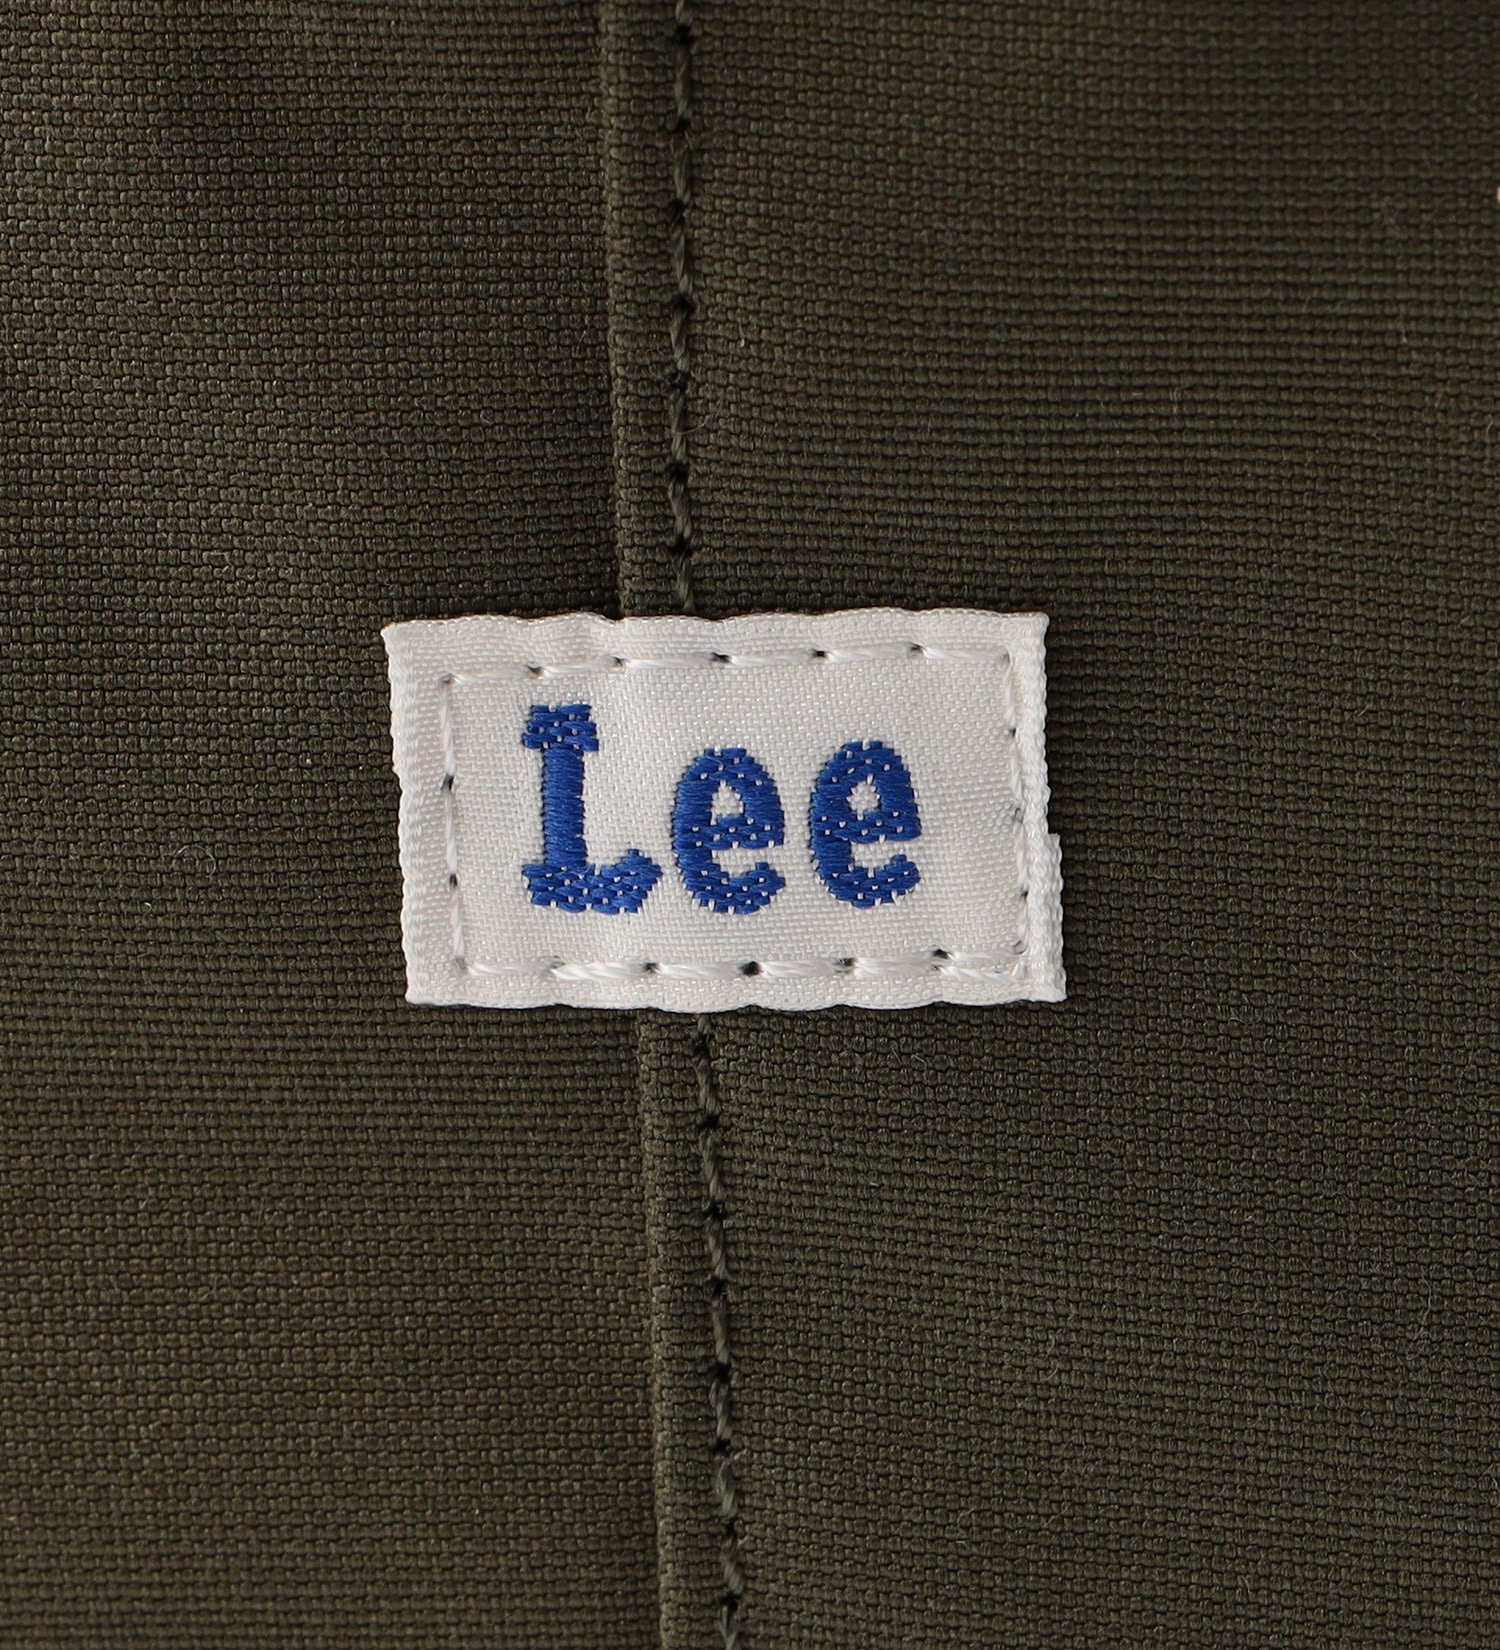 Lee(リー)のスクエアリュック|バッグ/バックパック/リュック/メンズ|オリーブ